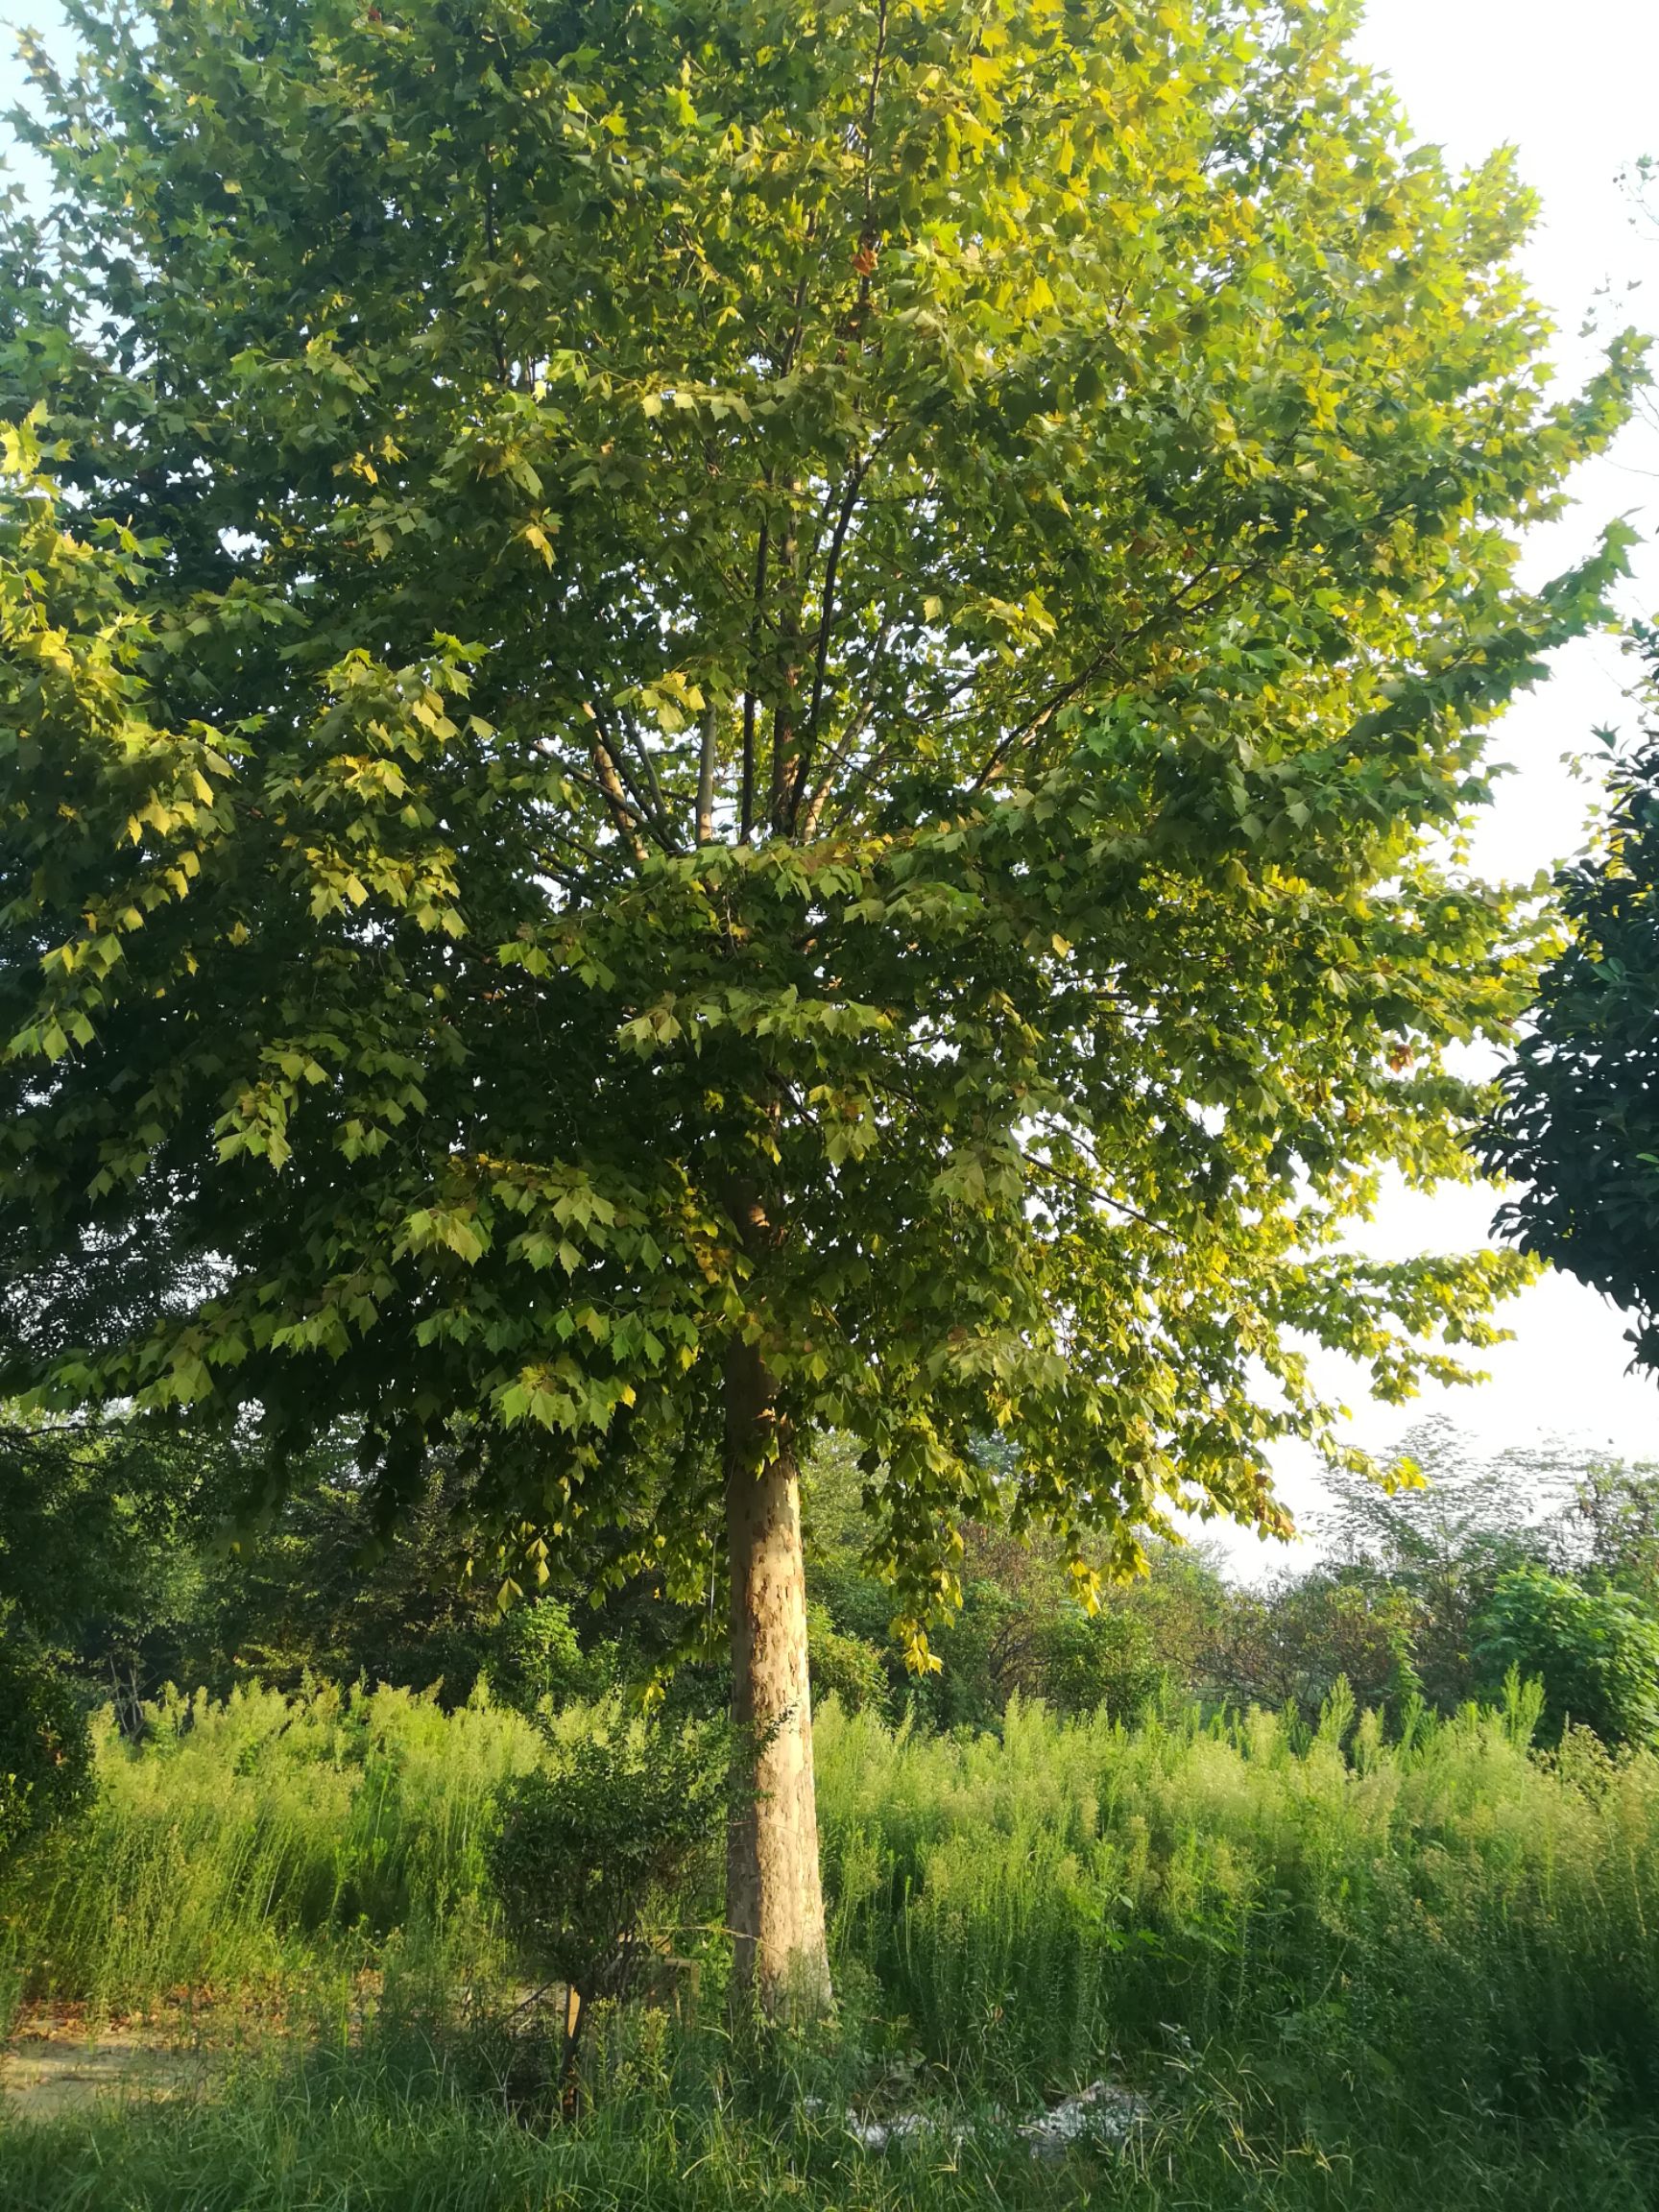 榔榆 大型景观树,有30年的树龄,技叶茂盛,树形奇特